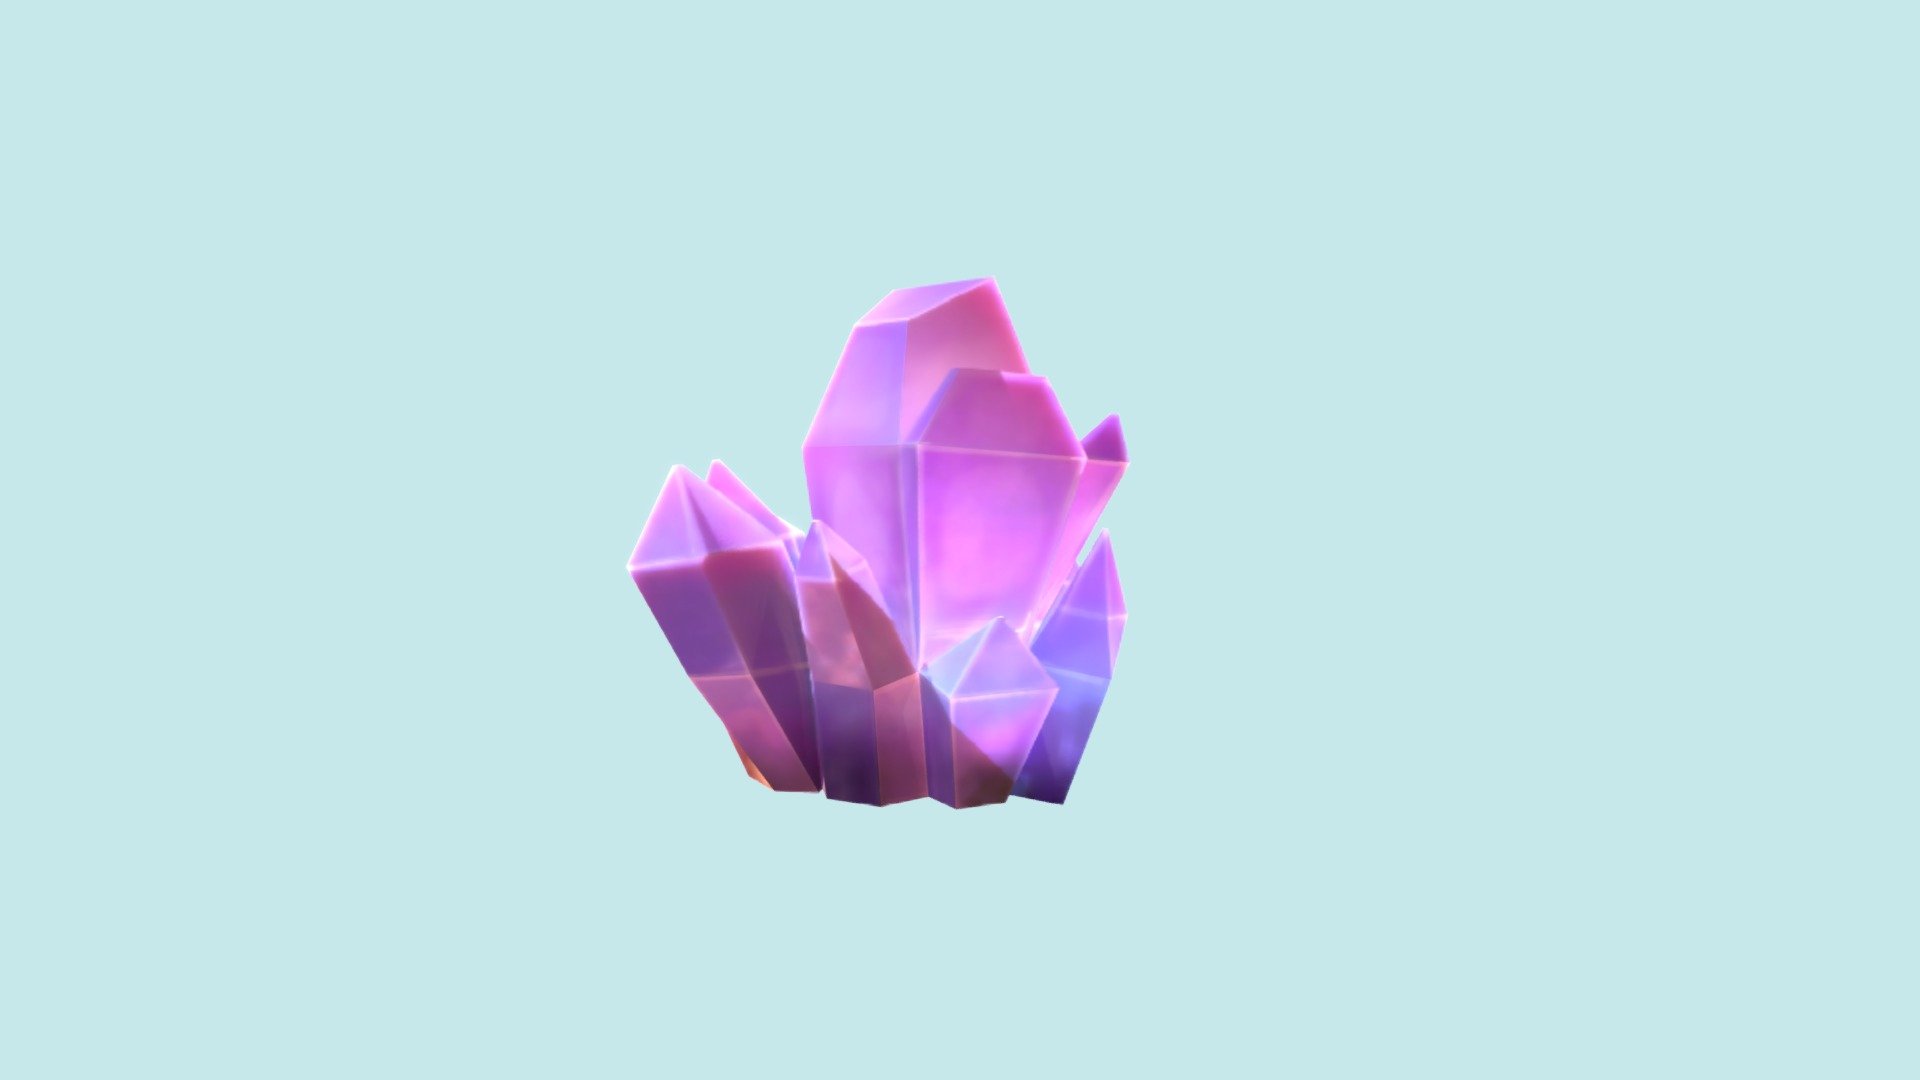 crystal modeled in Blender.

Files: Blender, fbx and textureUV 3d model